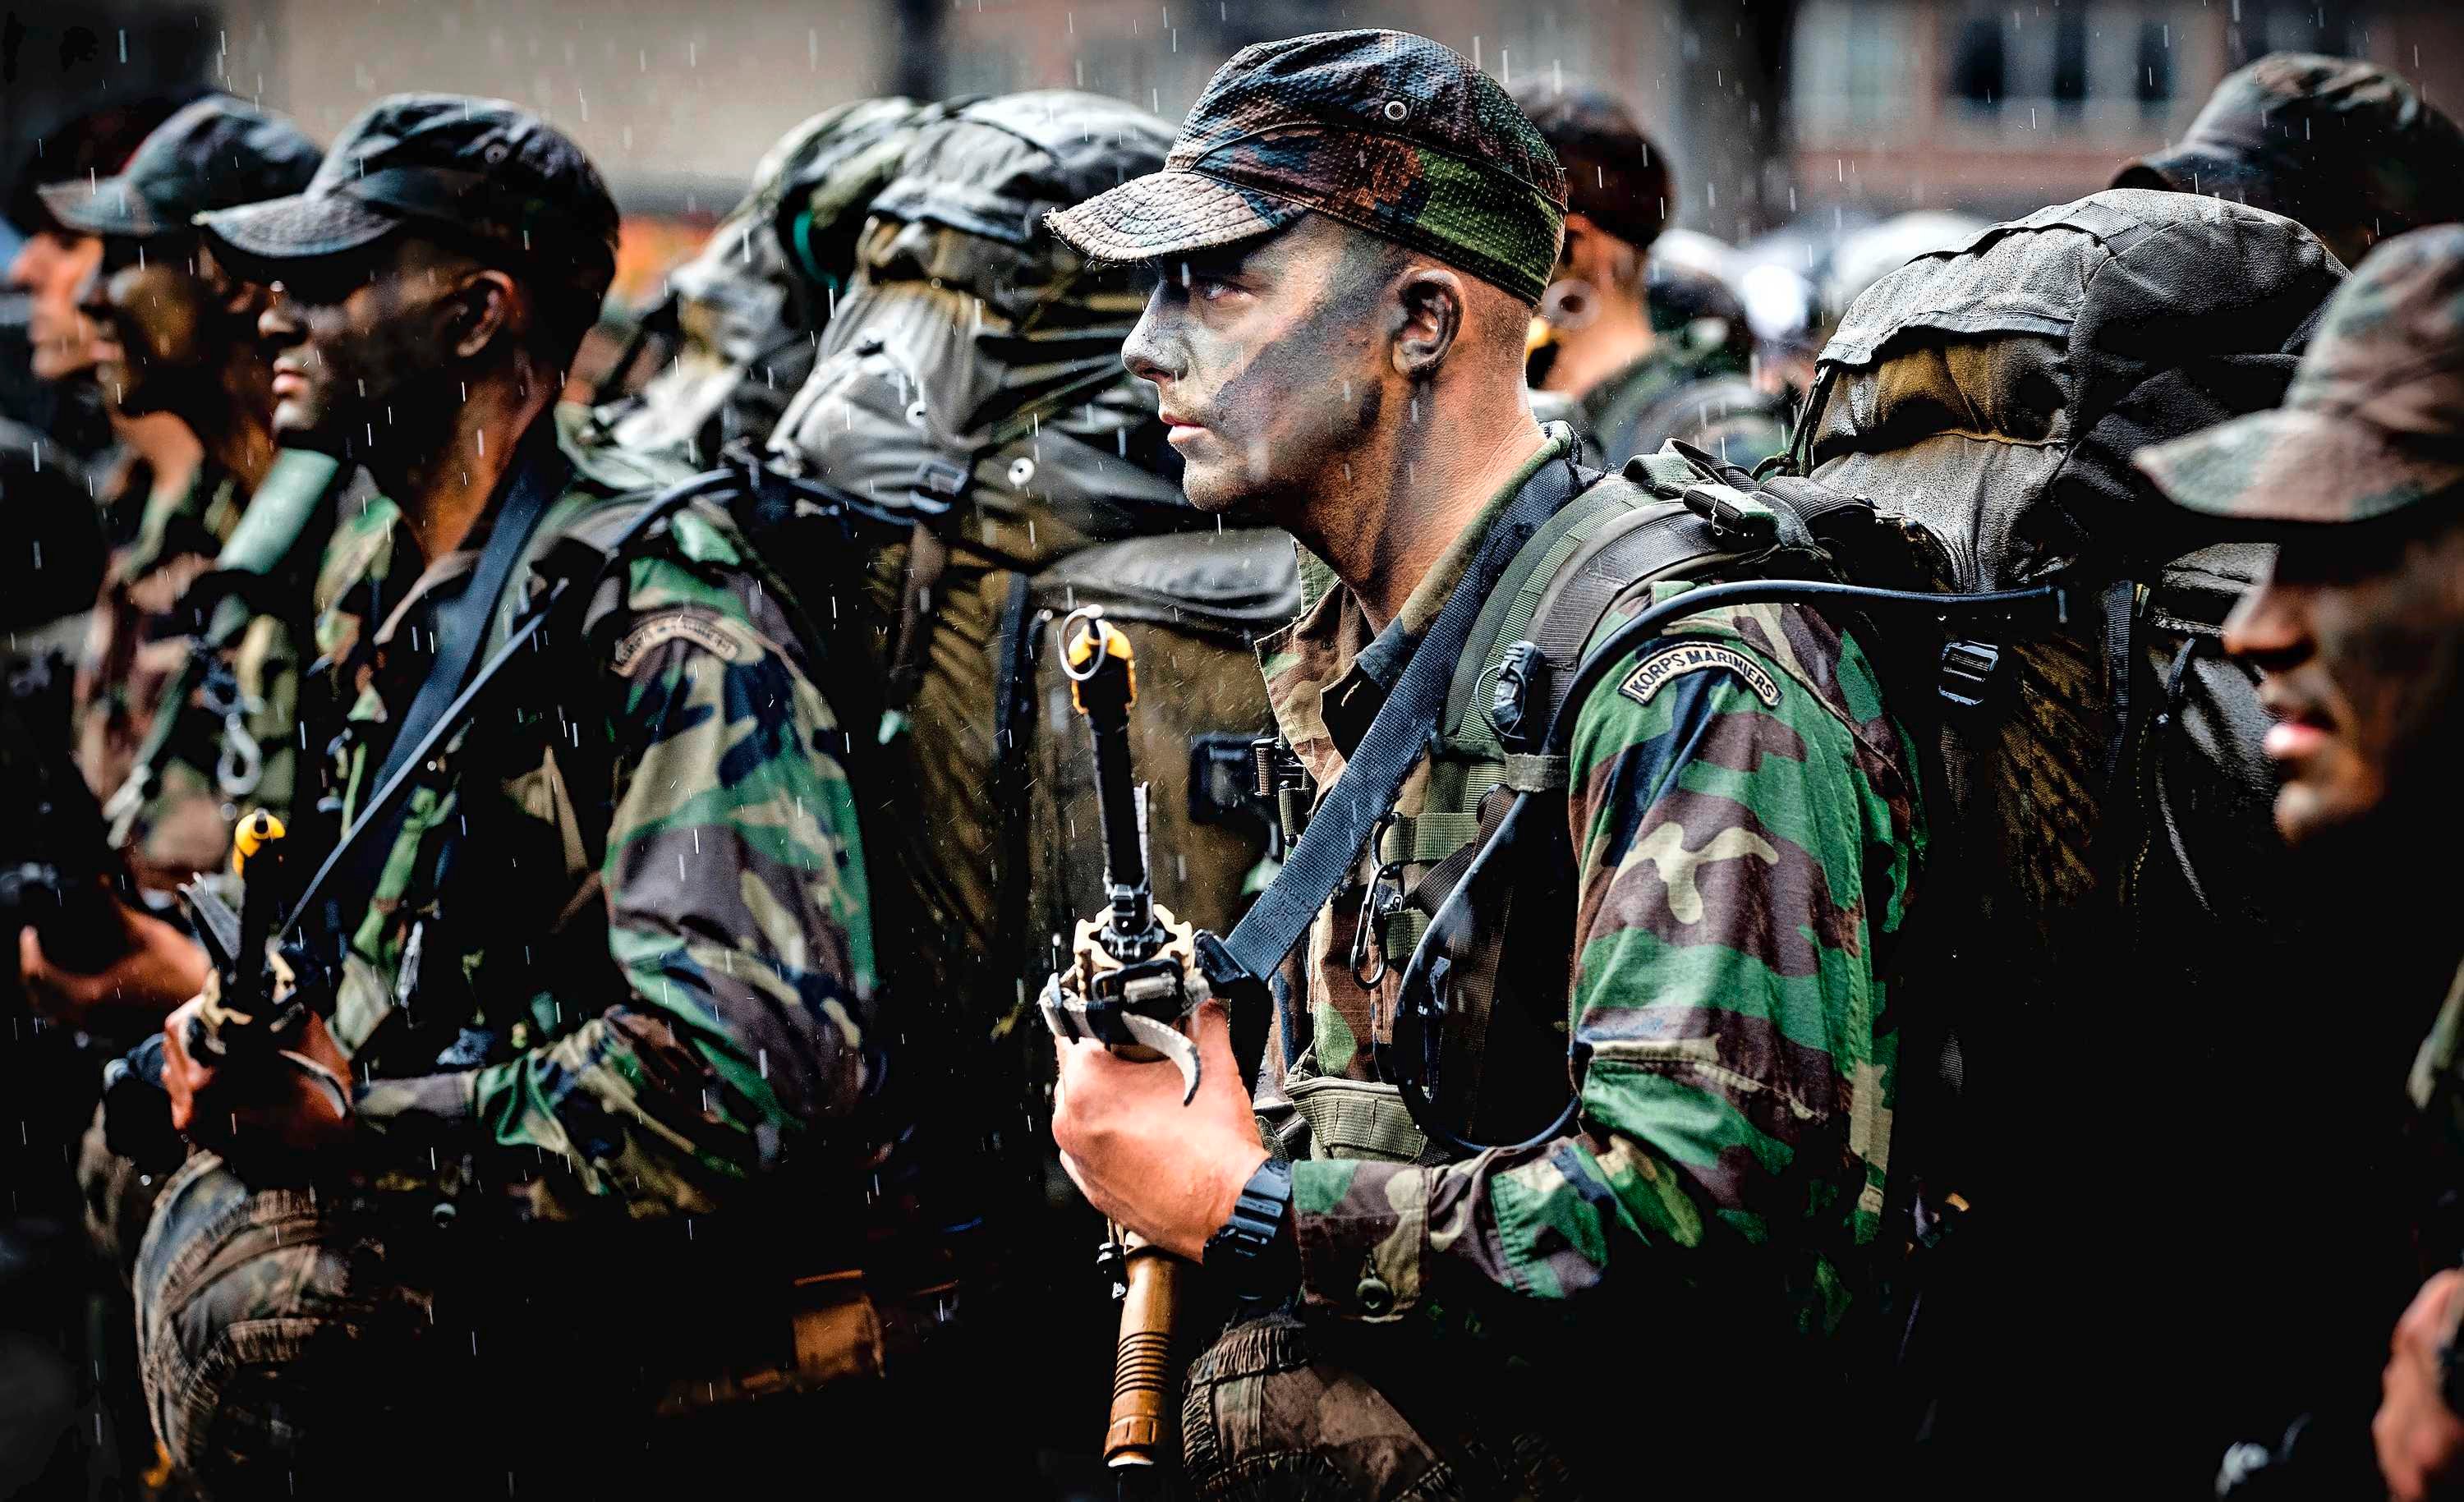 Denken Op de een of andere manier Zuinig Mariniers zonder radio's en punt 50 machinegeweren op missie naar Irak |  Binnenland | Telegraaf.nl